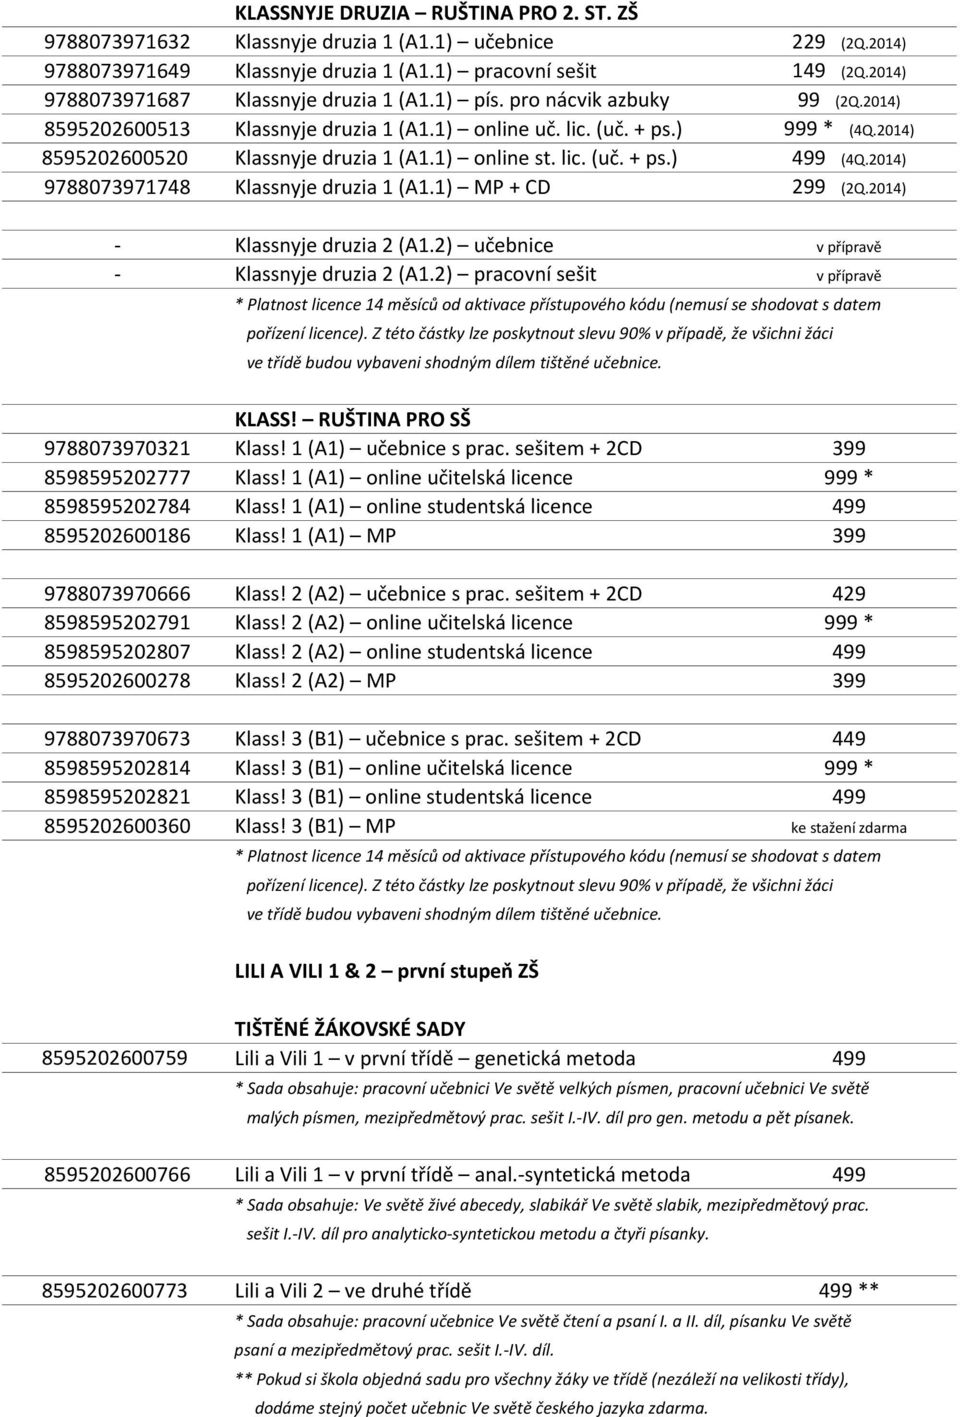 2014) 8595202600520 Klassnyje druzia 1 (A1.1) online st. lic. (uč. + ps.) 499 (4Q.2014) 9788073971748 Klassnyje druzia 1 (A1.1) MP + CD 299 (2Q.2014) - Klassnyje druzia 2 (A1.